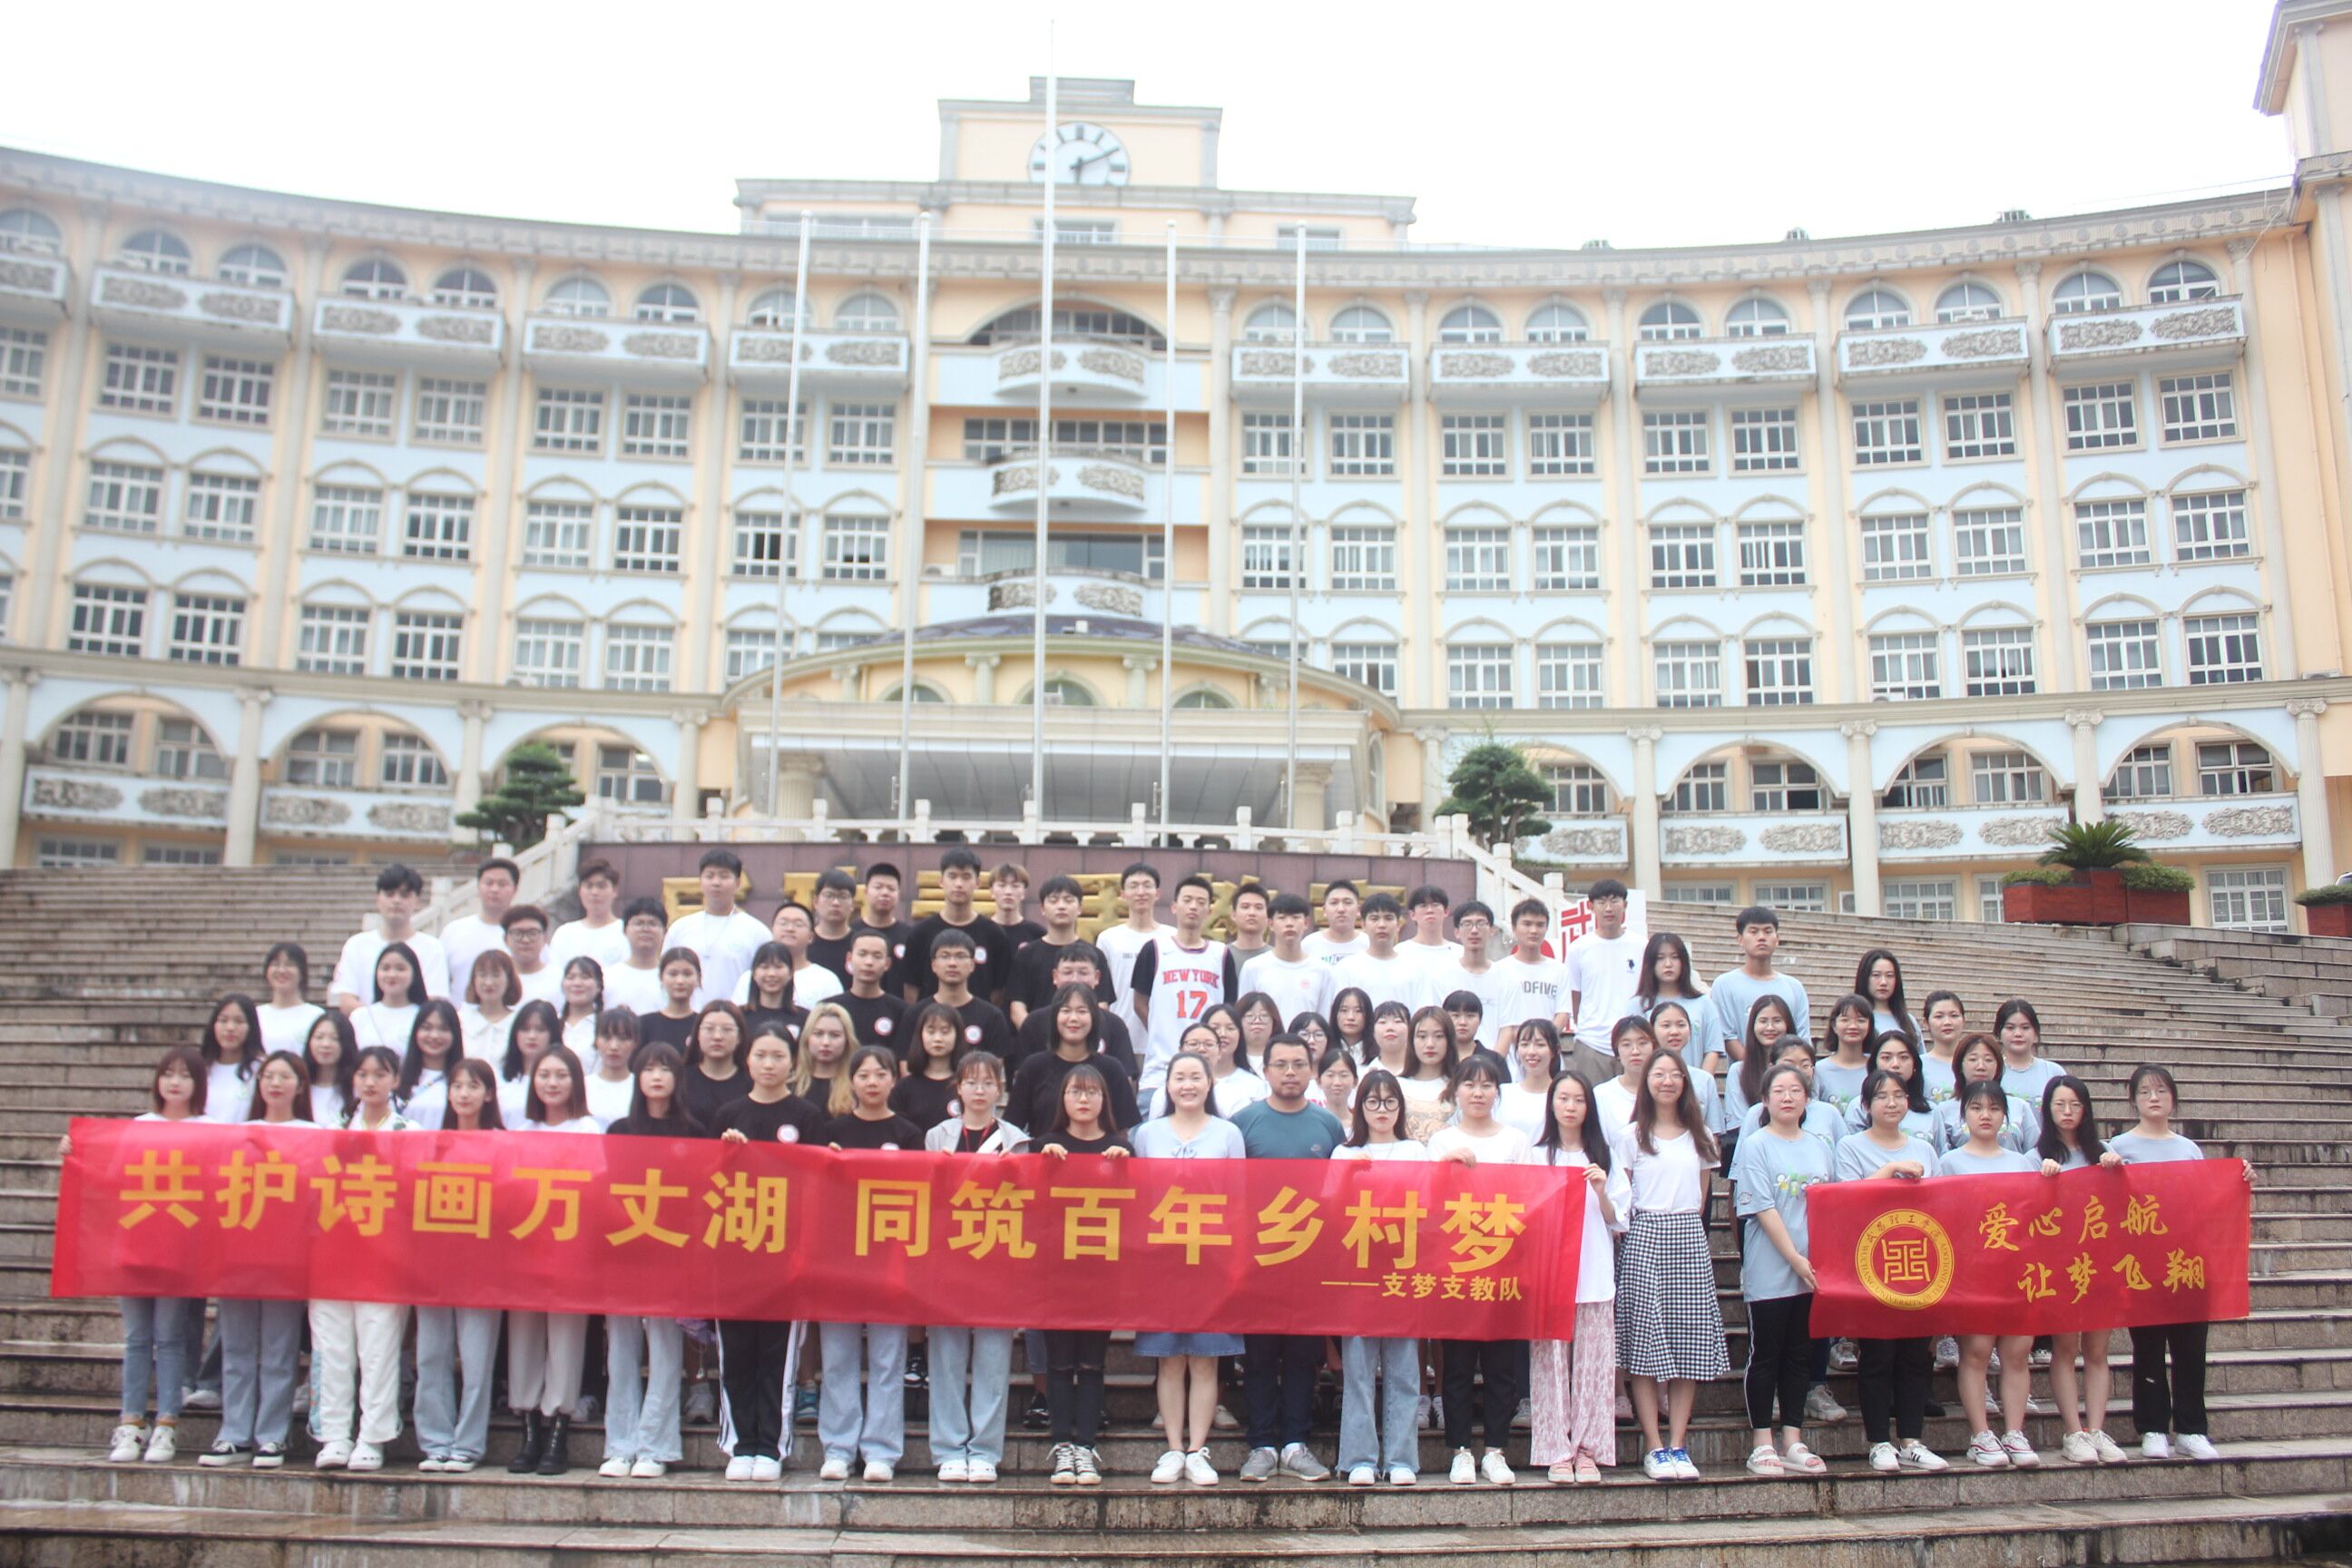 武汉一高校组织113支暑期实践团队奔赴全国各地开展社会实践